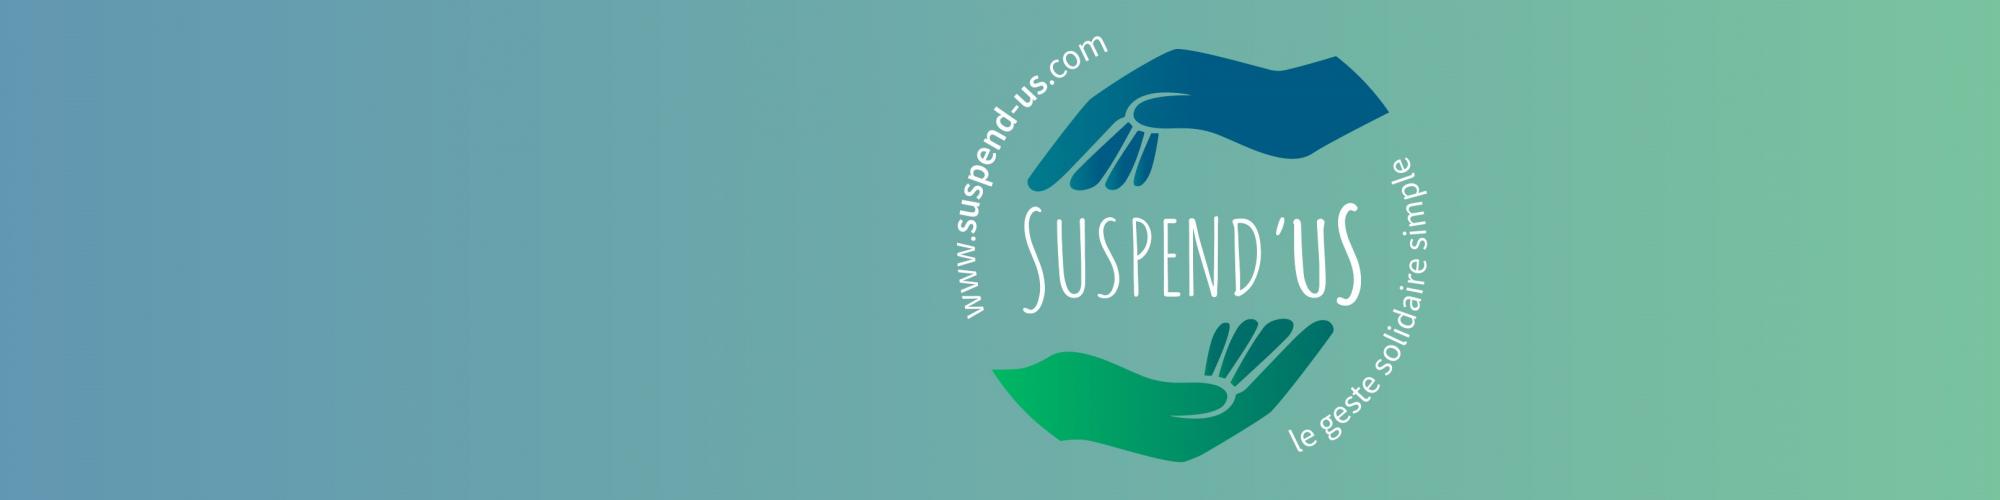 Suspend'us